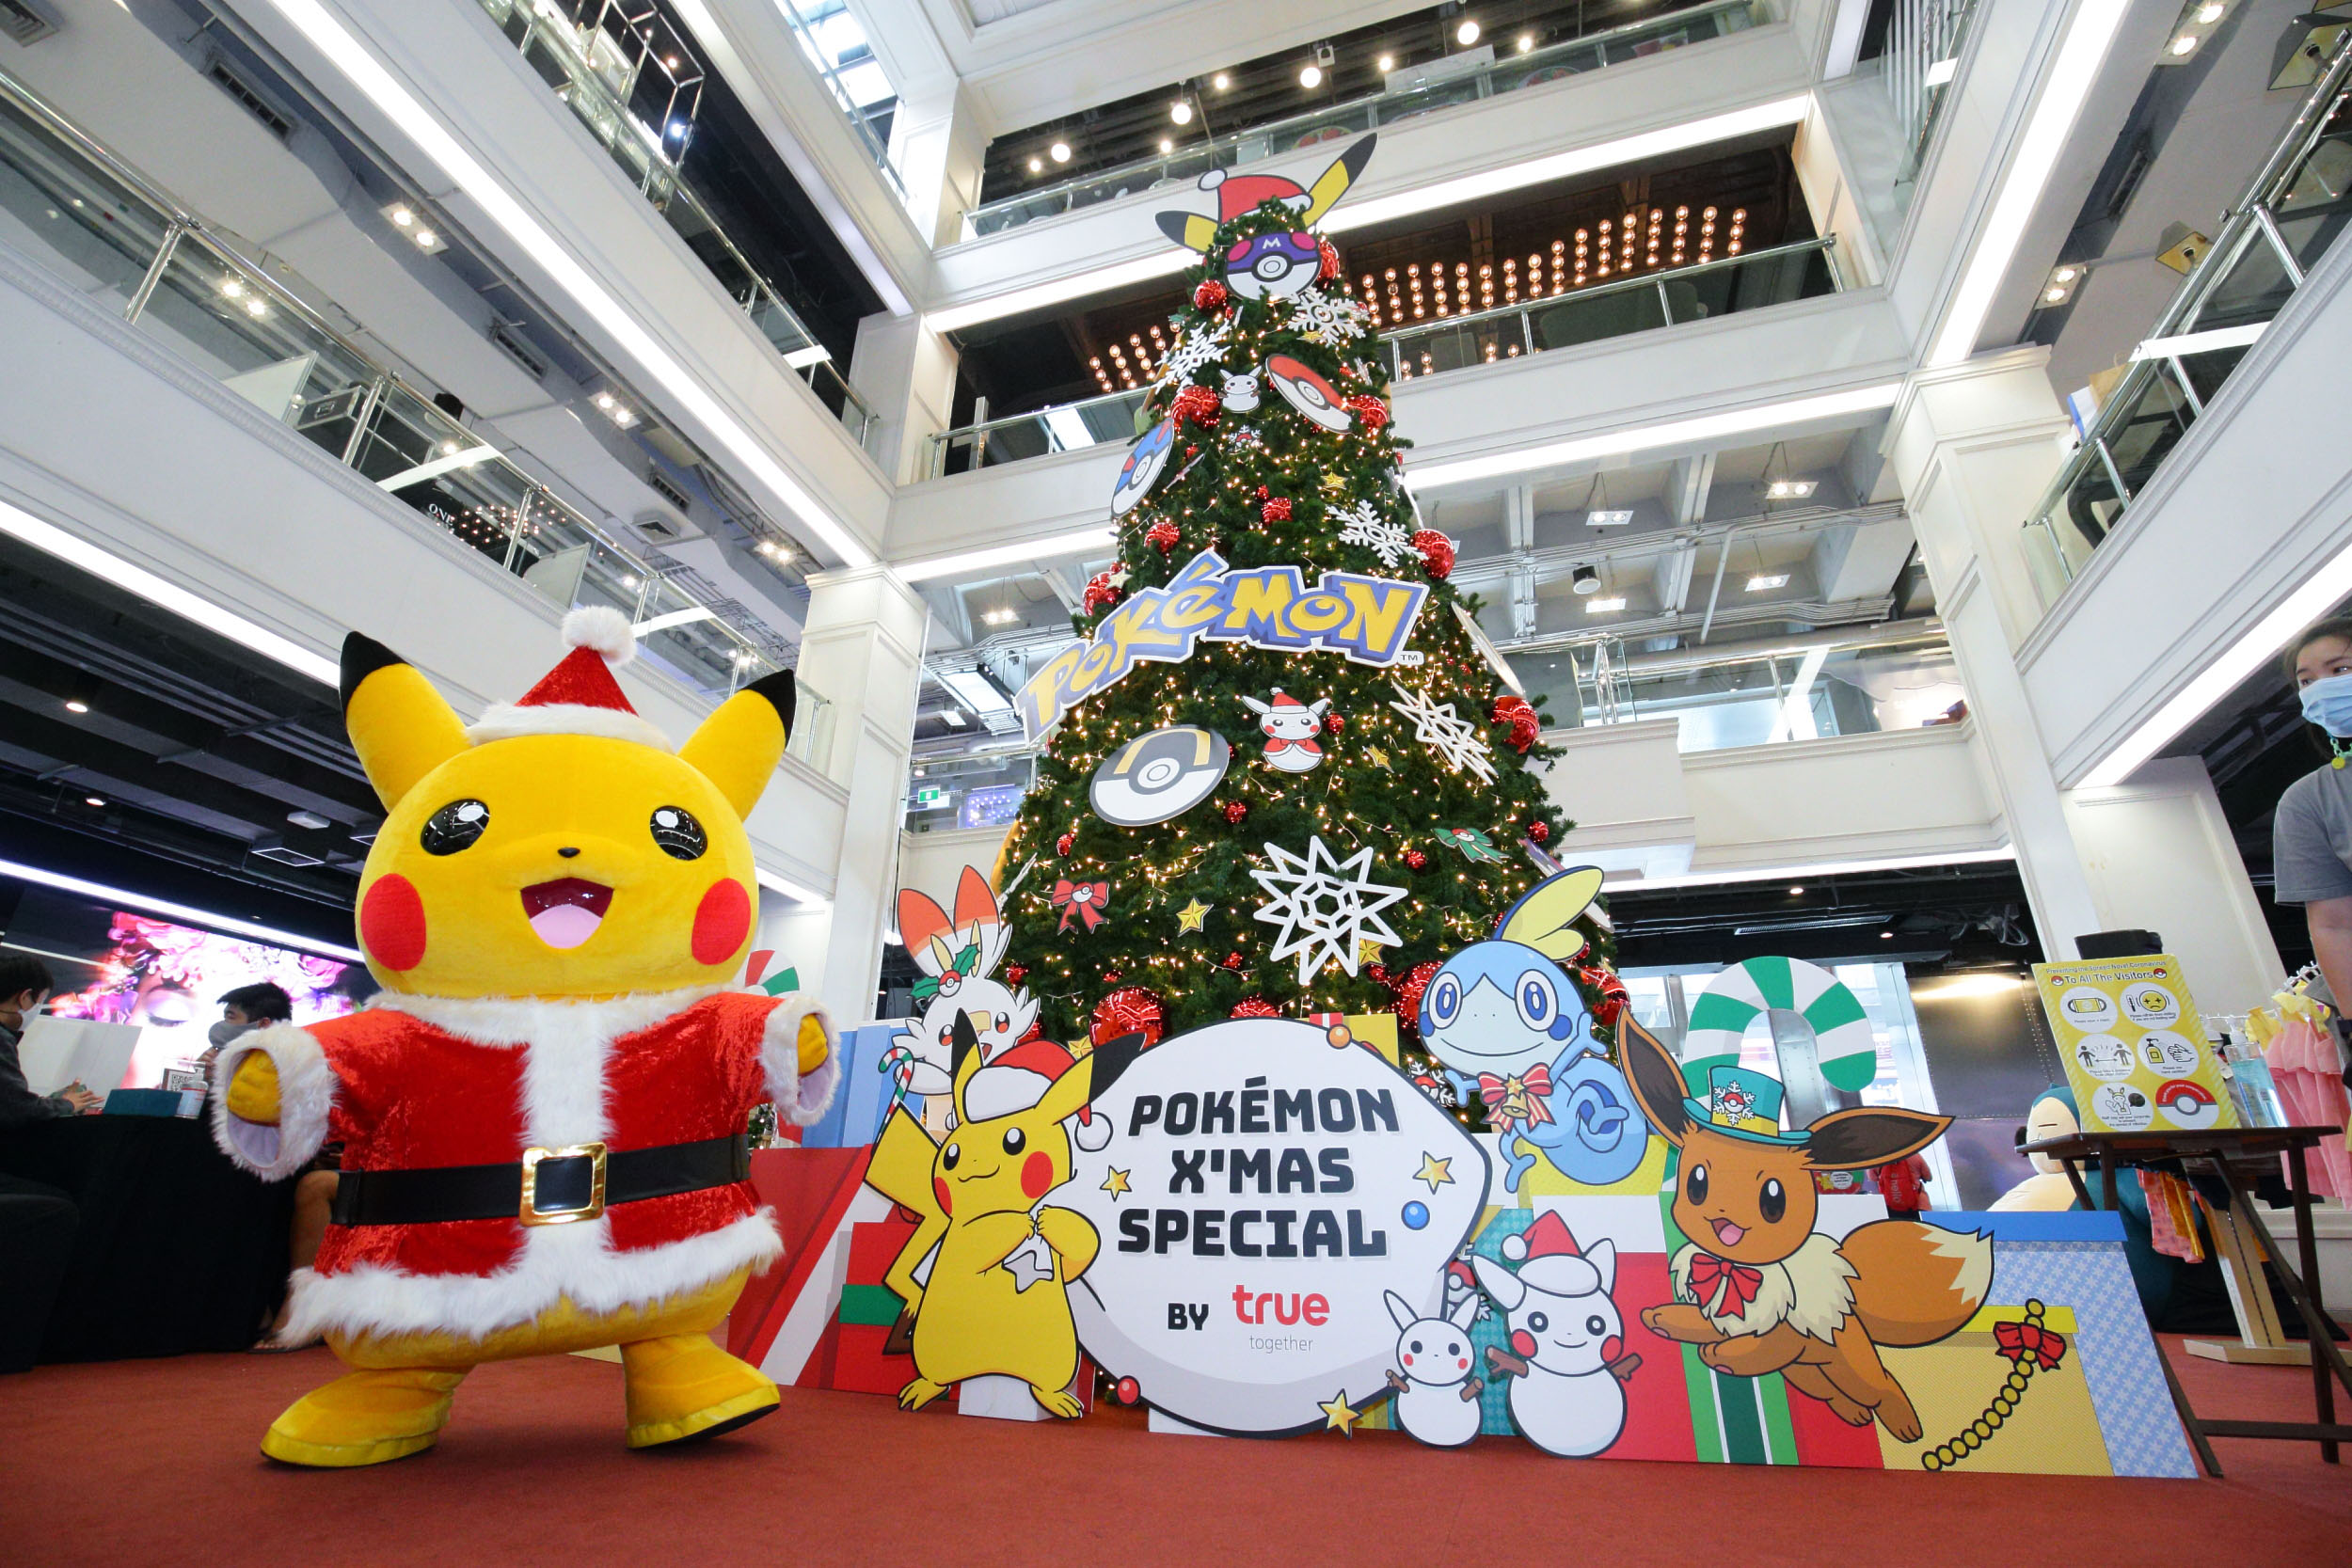 กลุ่มทรูฯ และ เดอะ โปเกมอน คอมพานี มอบของขวัญปีใหม่ ในงาน Pokémon X’mas Special by True เติมความสุขและรอยยิ้มให้ครอบครัวทั่วไทยด้วยชุดของขวัญ โปเกมอน เทรดดิ้งการ์ดเกม